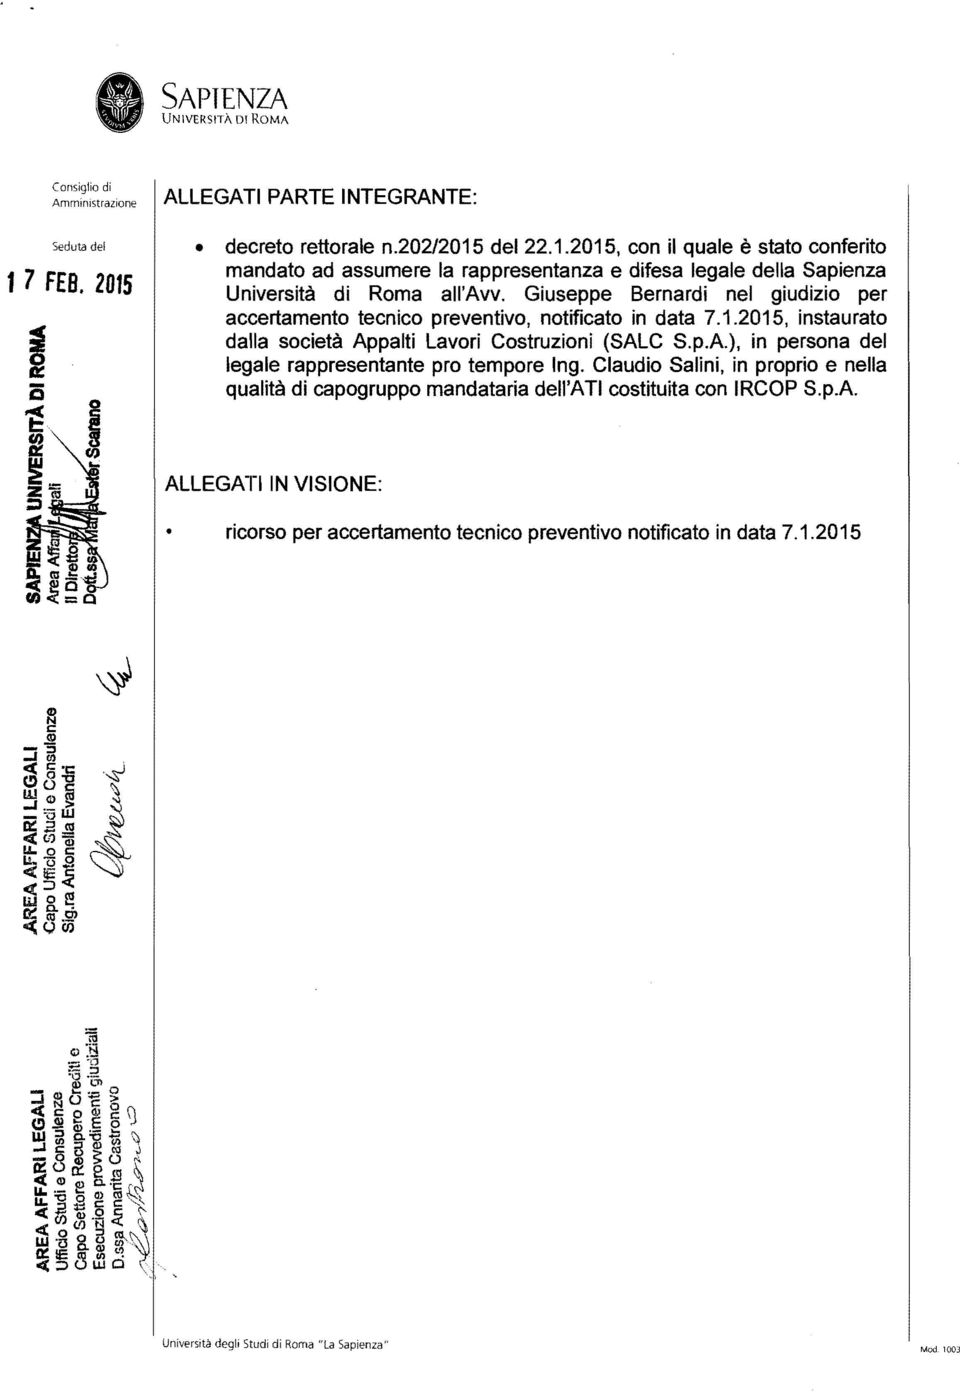 Giuseppe Bernardi nel giudizio per accertamento tecnico preventivo, notificato in data 7.1.2015, instaurato dalla società Ap